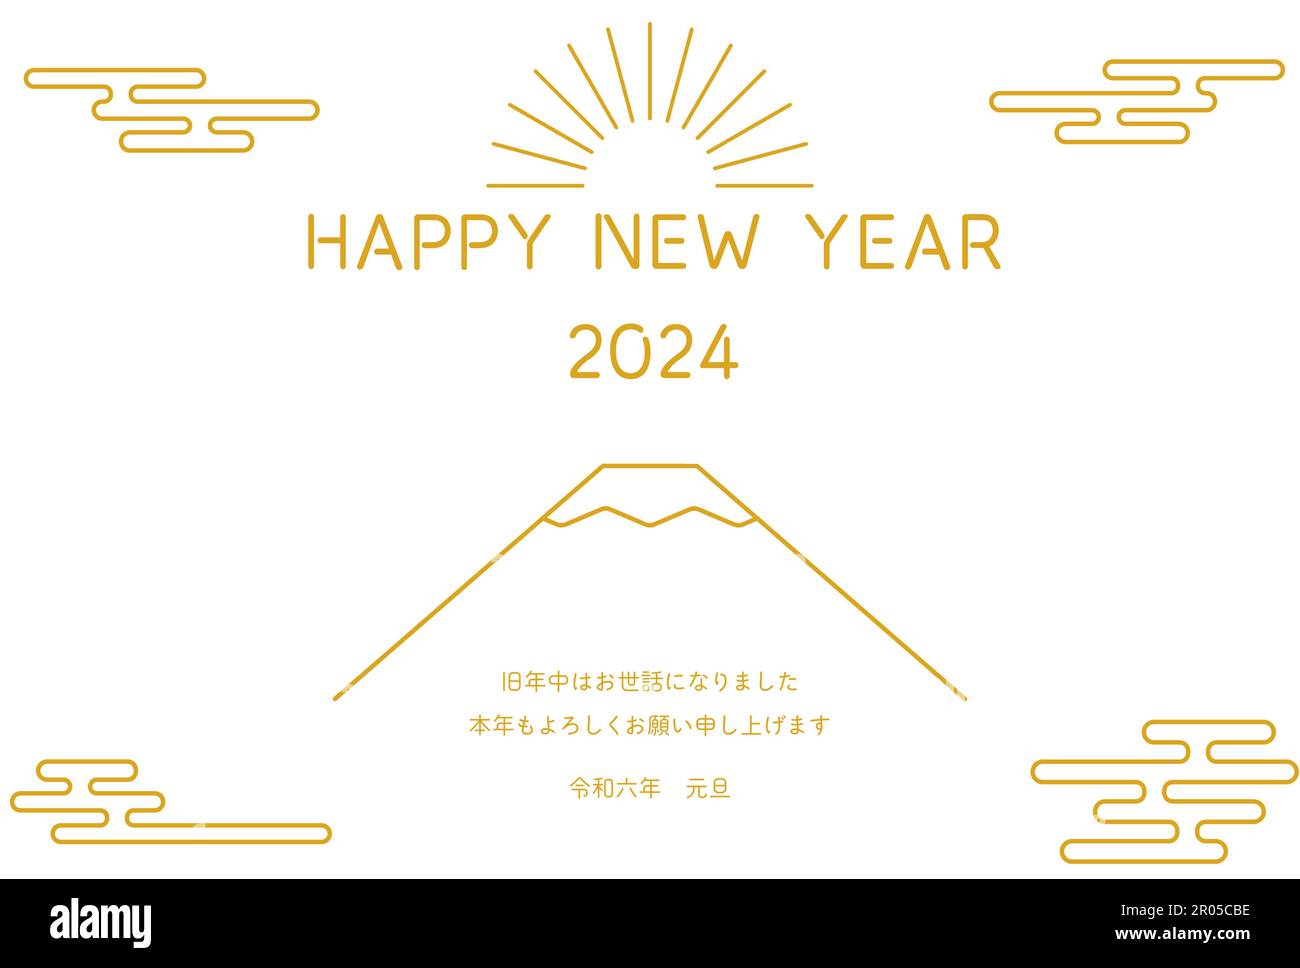 Neujahrskarte im japanischen Stil für 2024 Personen, einfache Strichzeichnung des Mt. Fuji und der erste Sonnenaufgang des Jahres - Übersetzung: Nochmals vielen Dank dieses Jahr. Stock Vektor